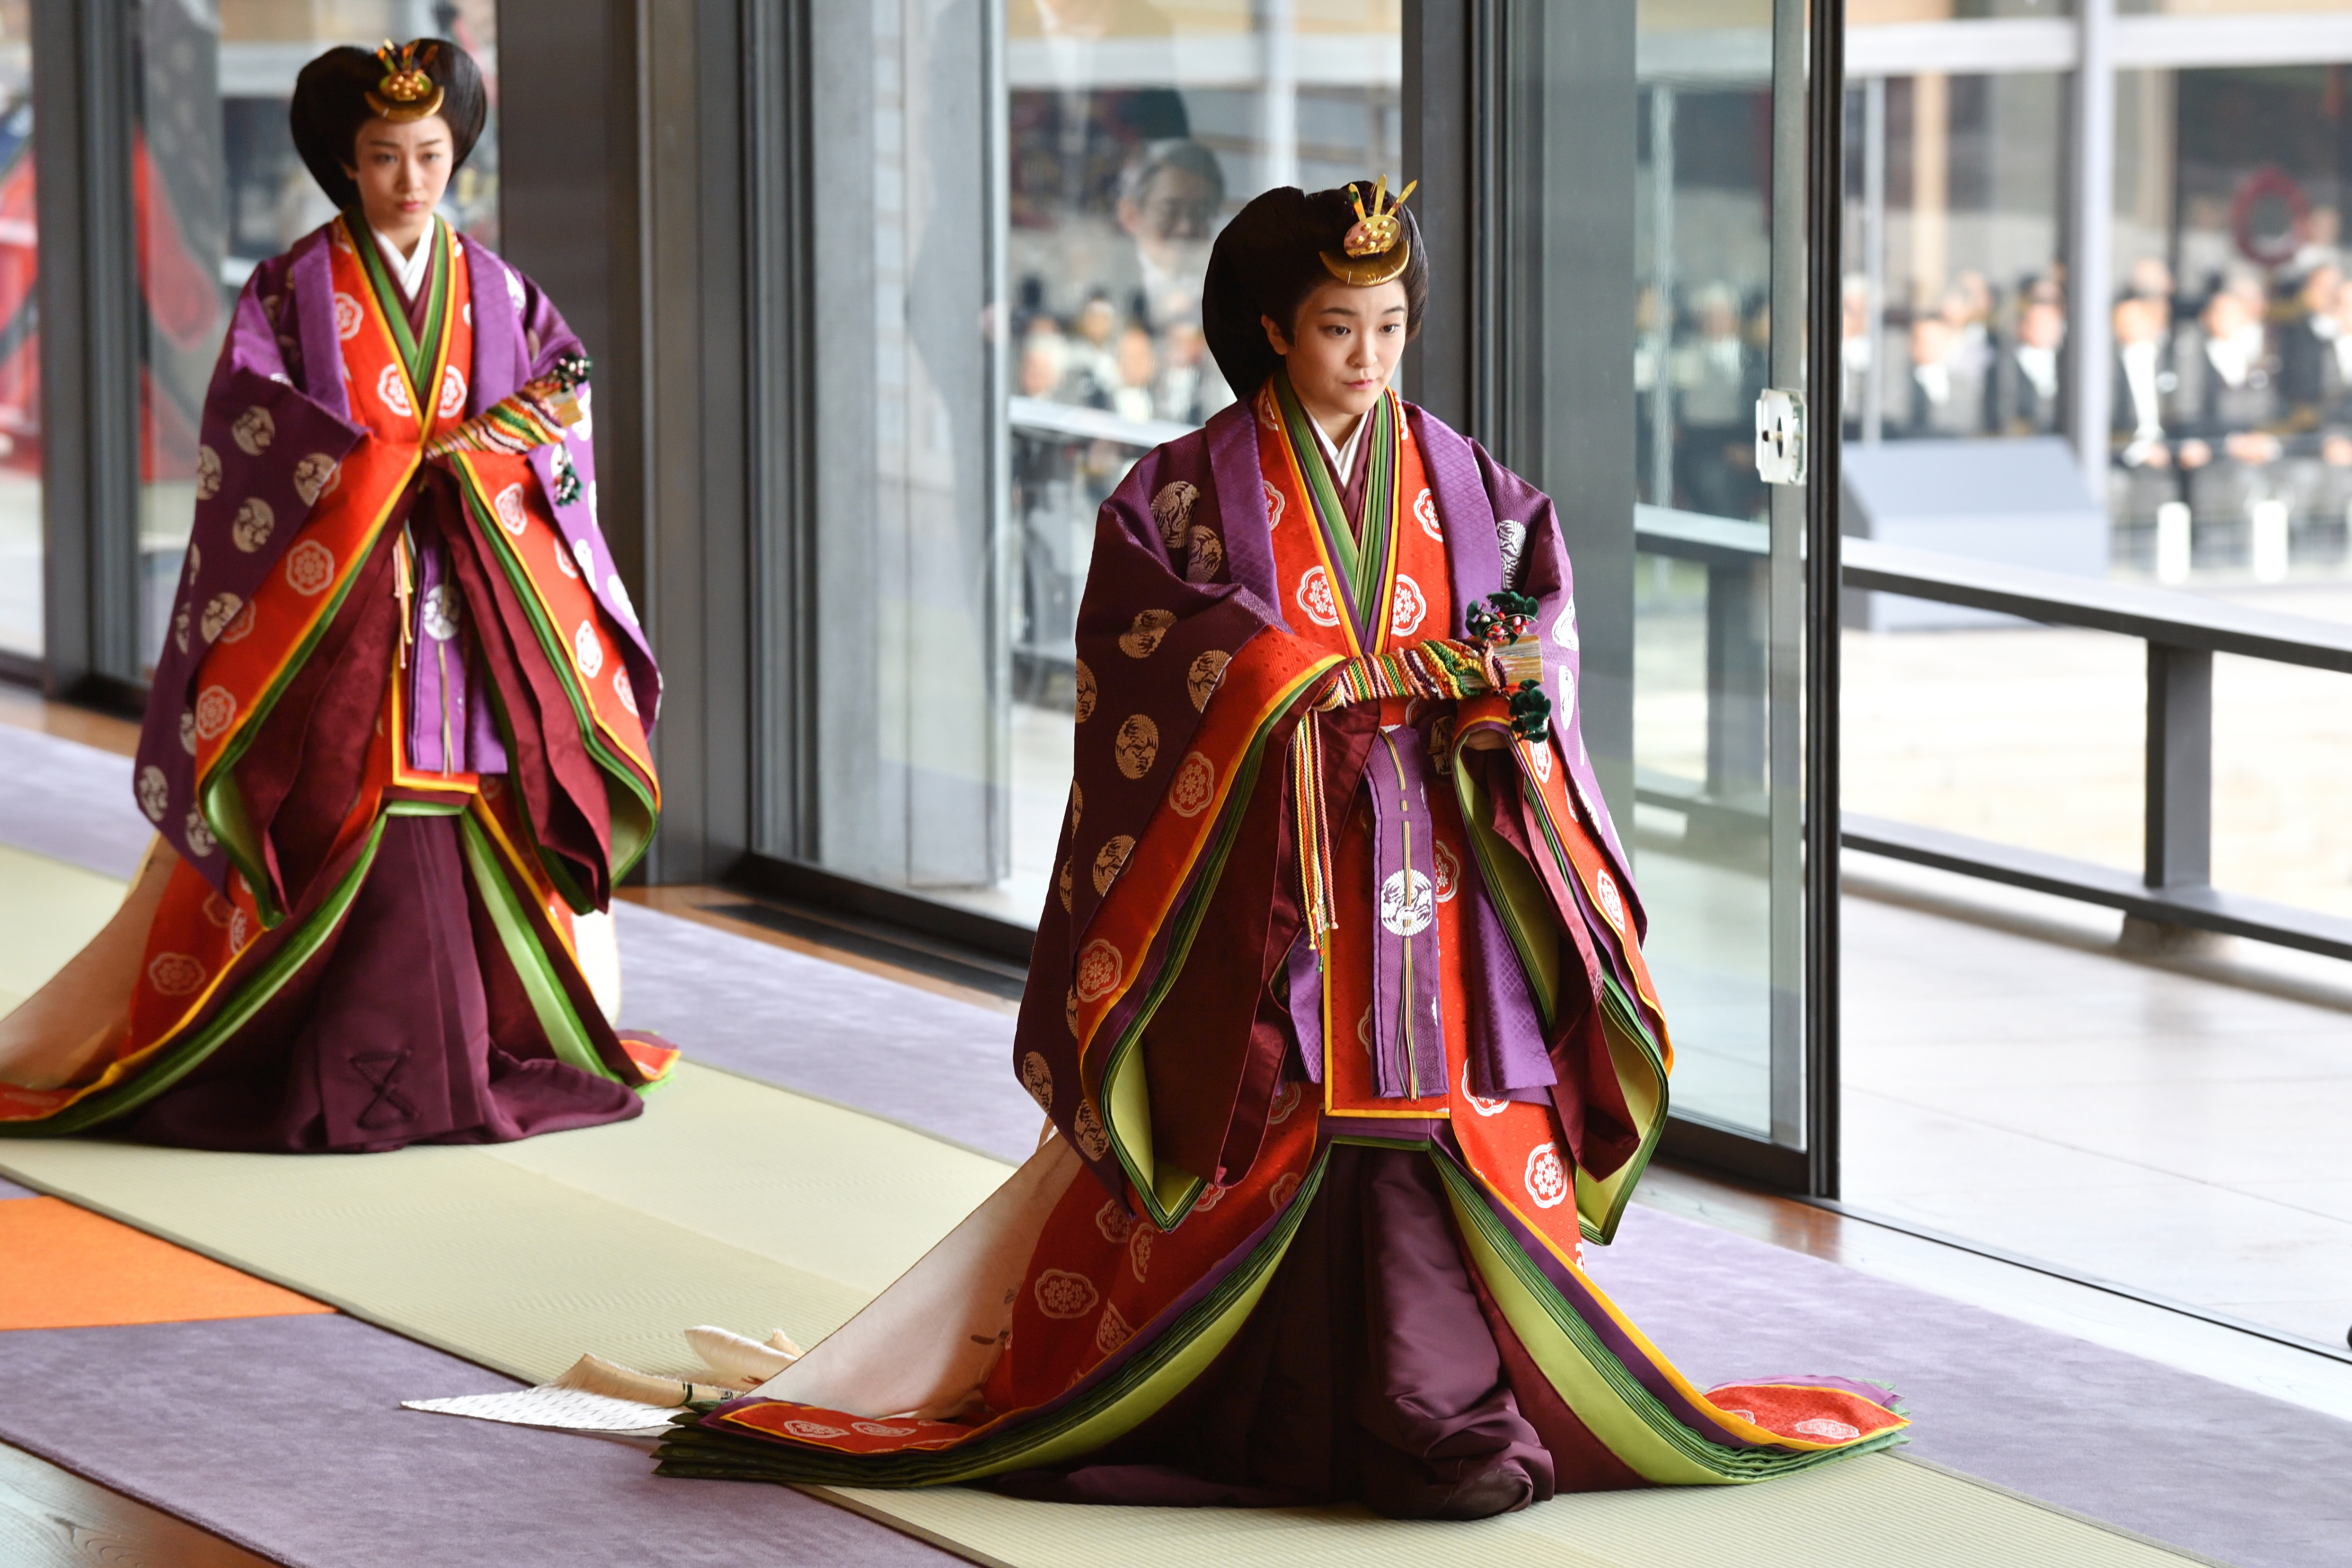 Mako (a képen jobbra) még hercegnőként, 2019-ben (Fotó: Kazuhiro Nogi/Pool/Getty Images)